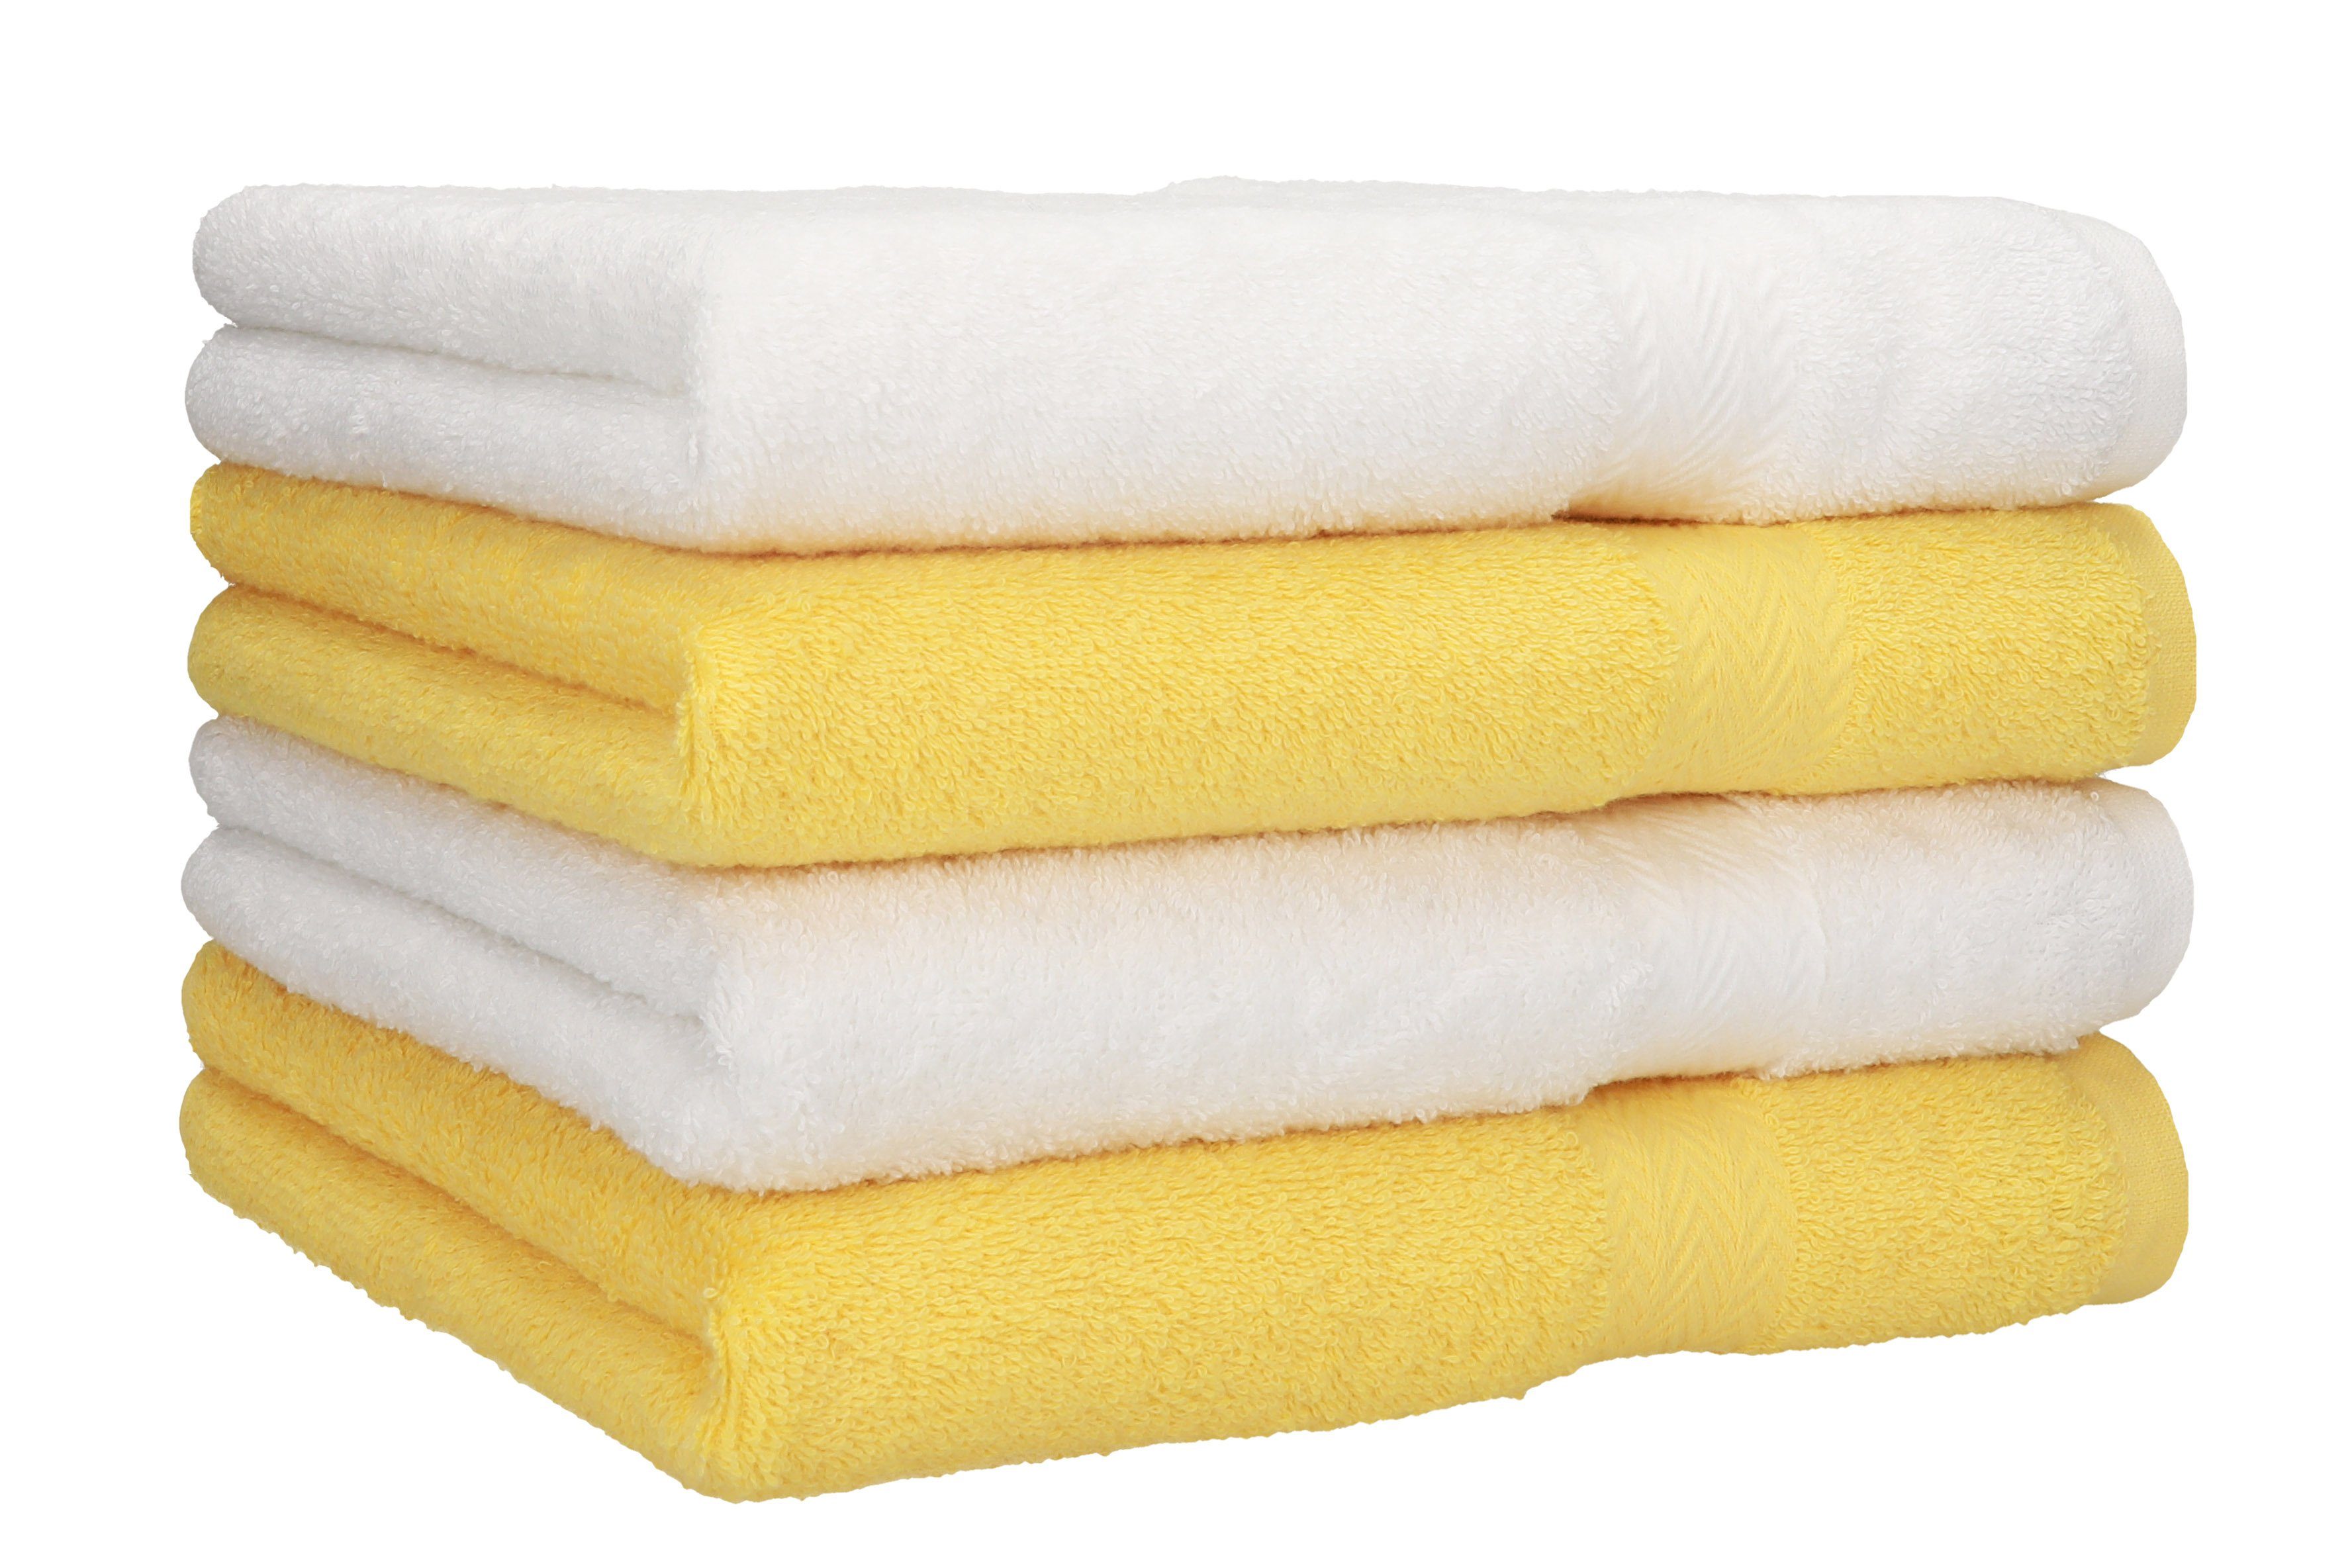 Betz Handtücher 4 Stück Handtücher Premium 4 Handtücher Farbe weiß und gelb, 100% Baumwolle